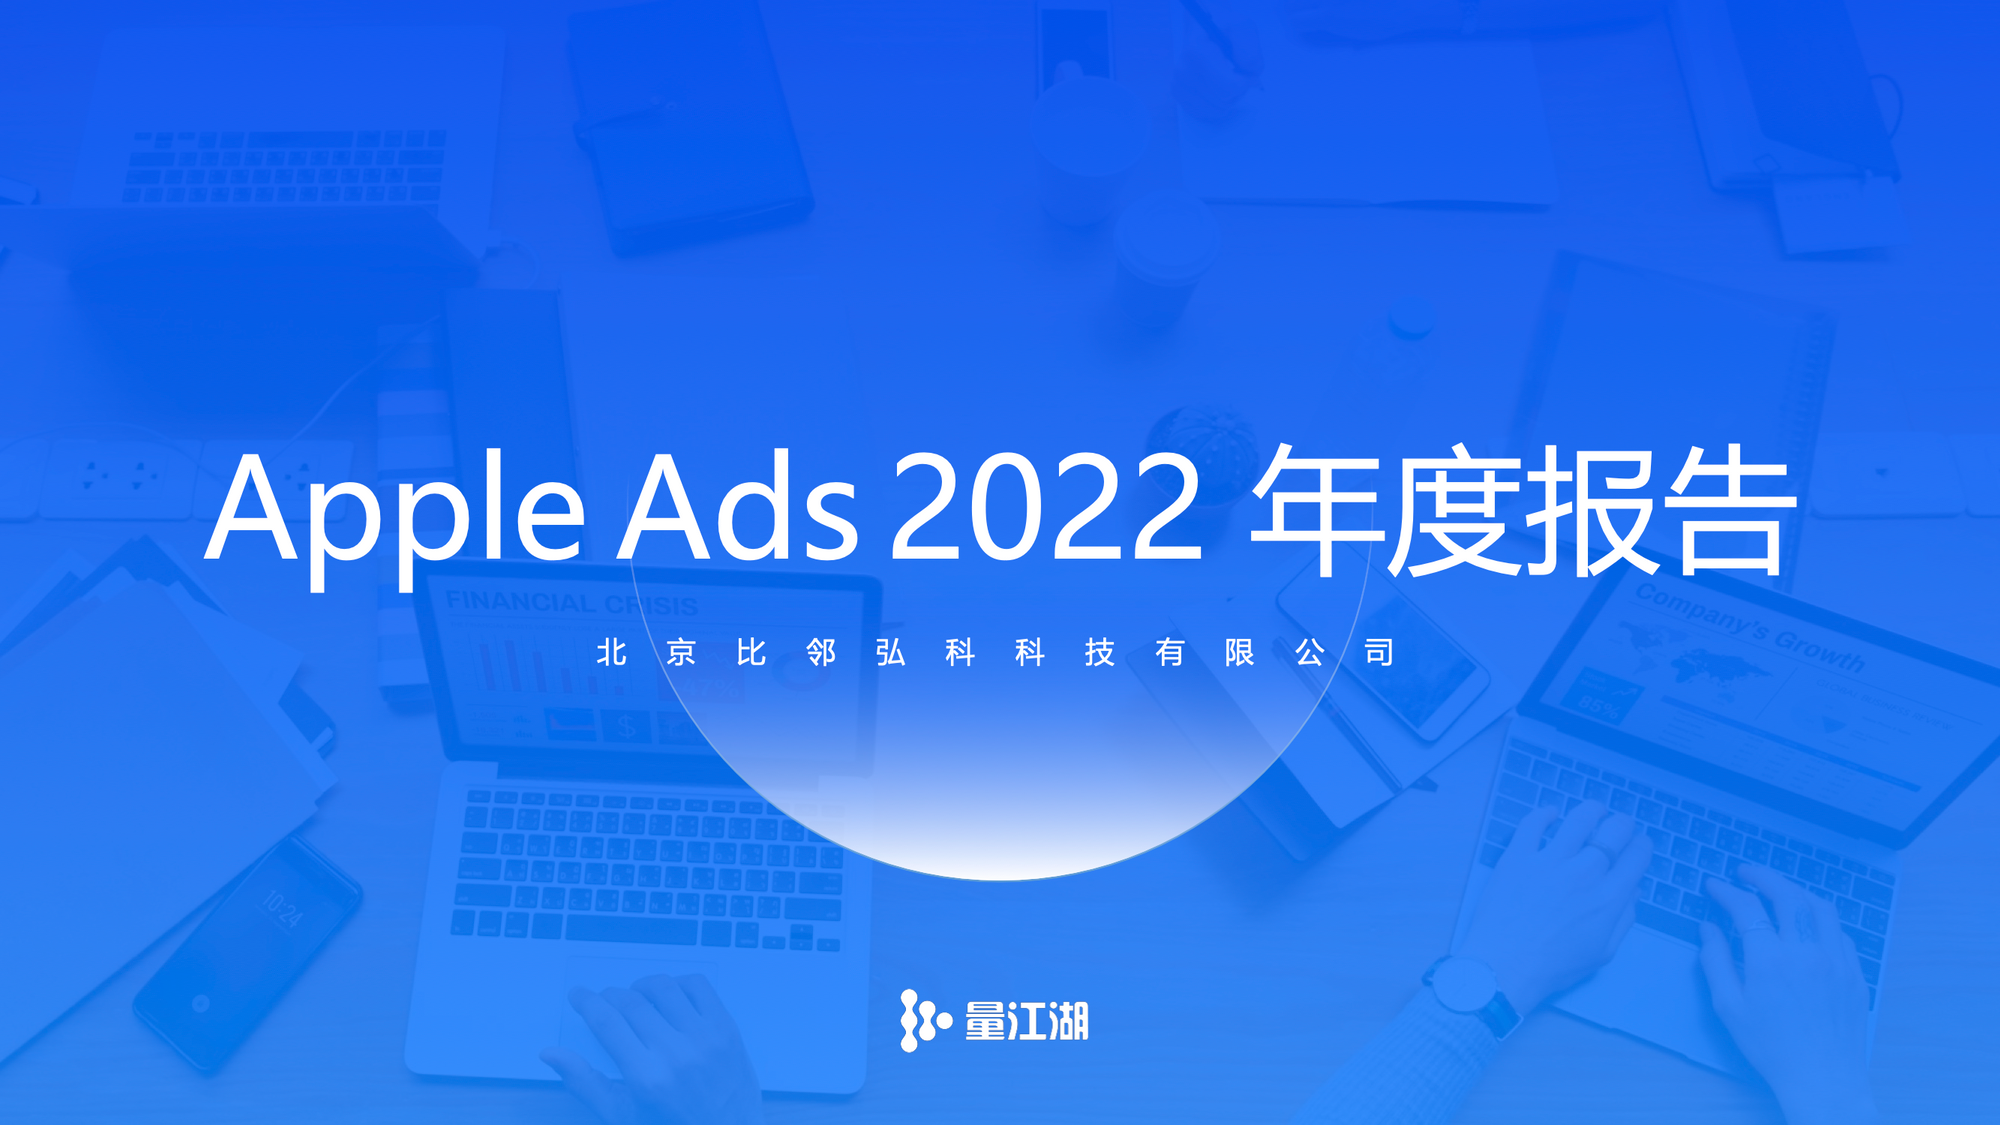 2022 年度 Apple Ads 數據報告正式發布